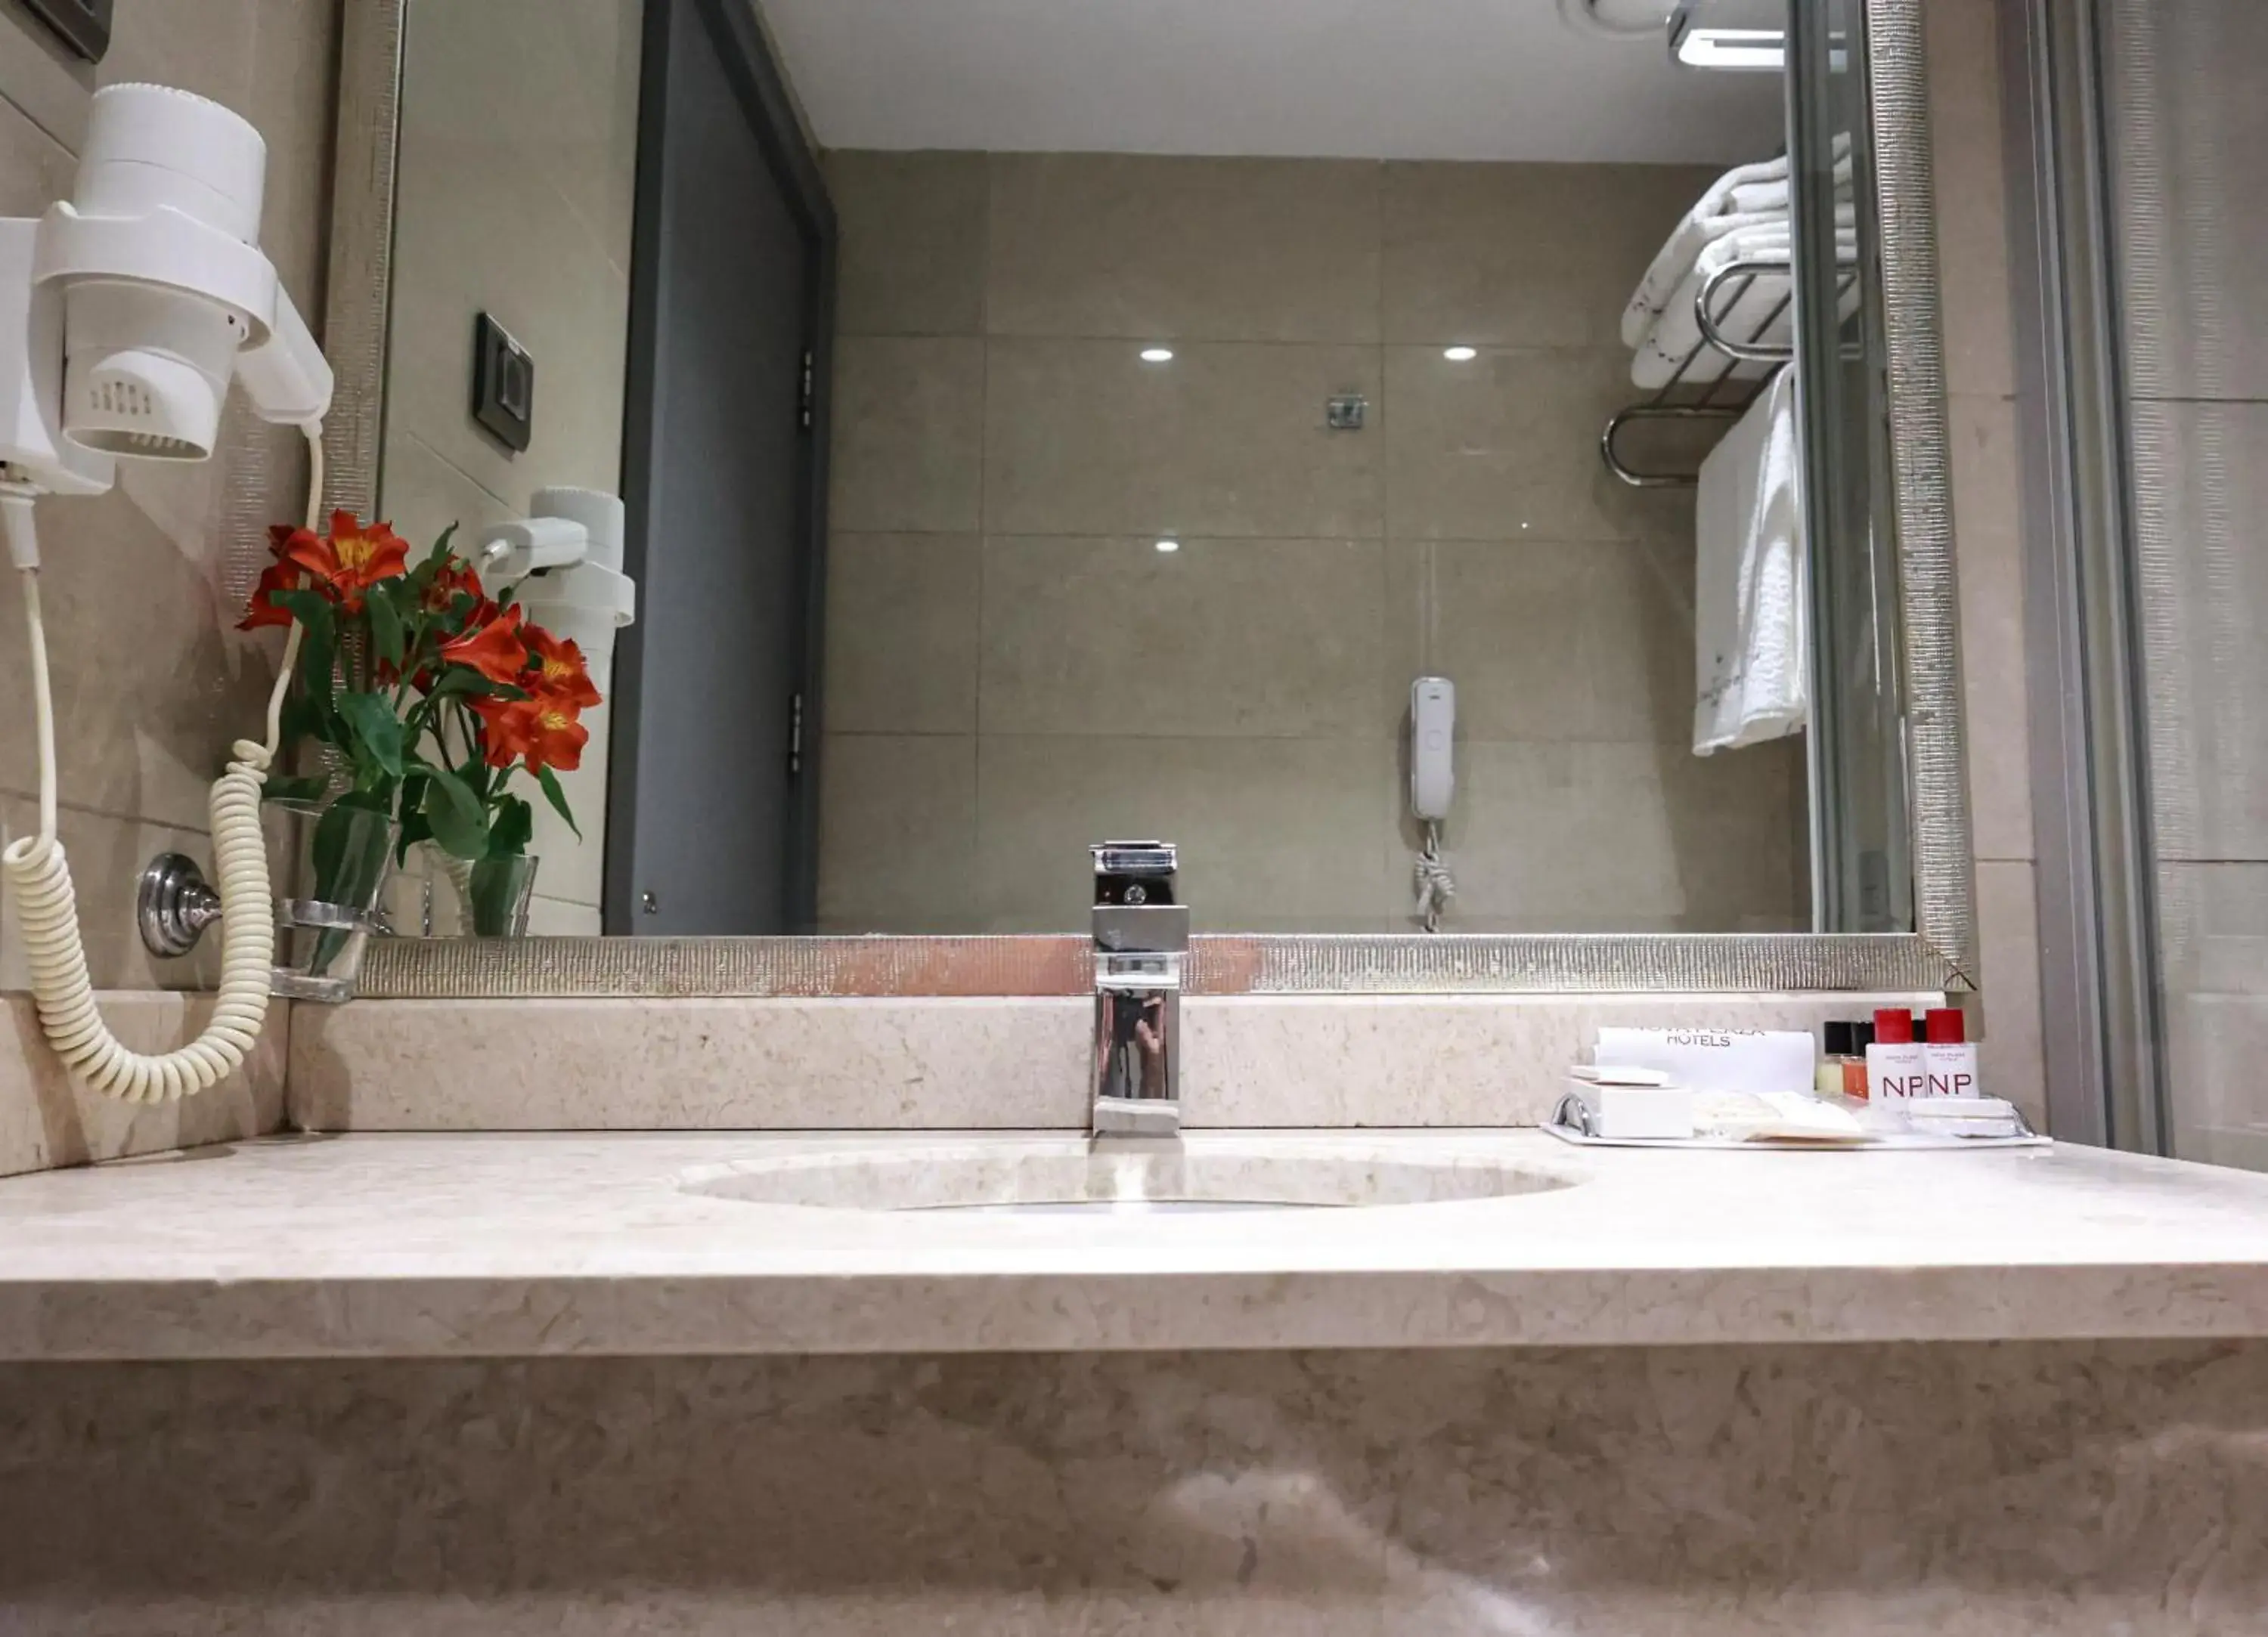 Shower, Bathroom in Nova Plaza Park Hotel